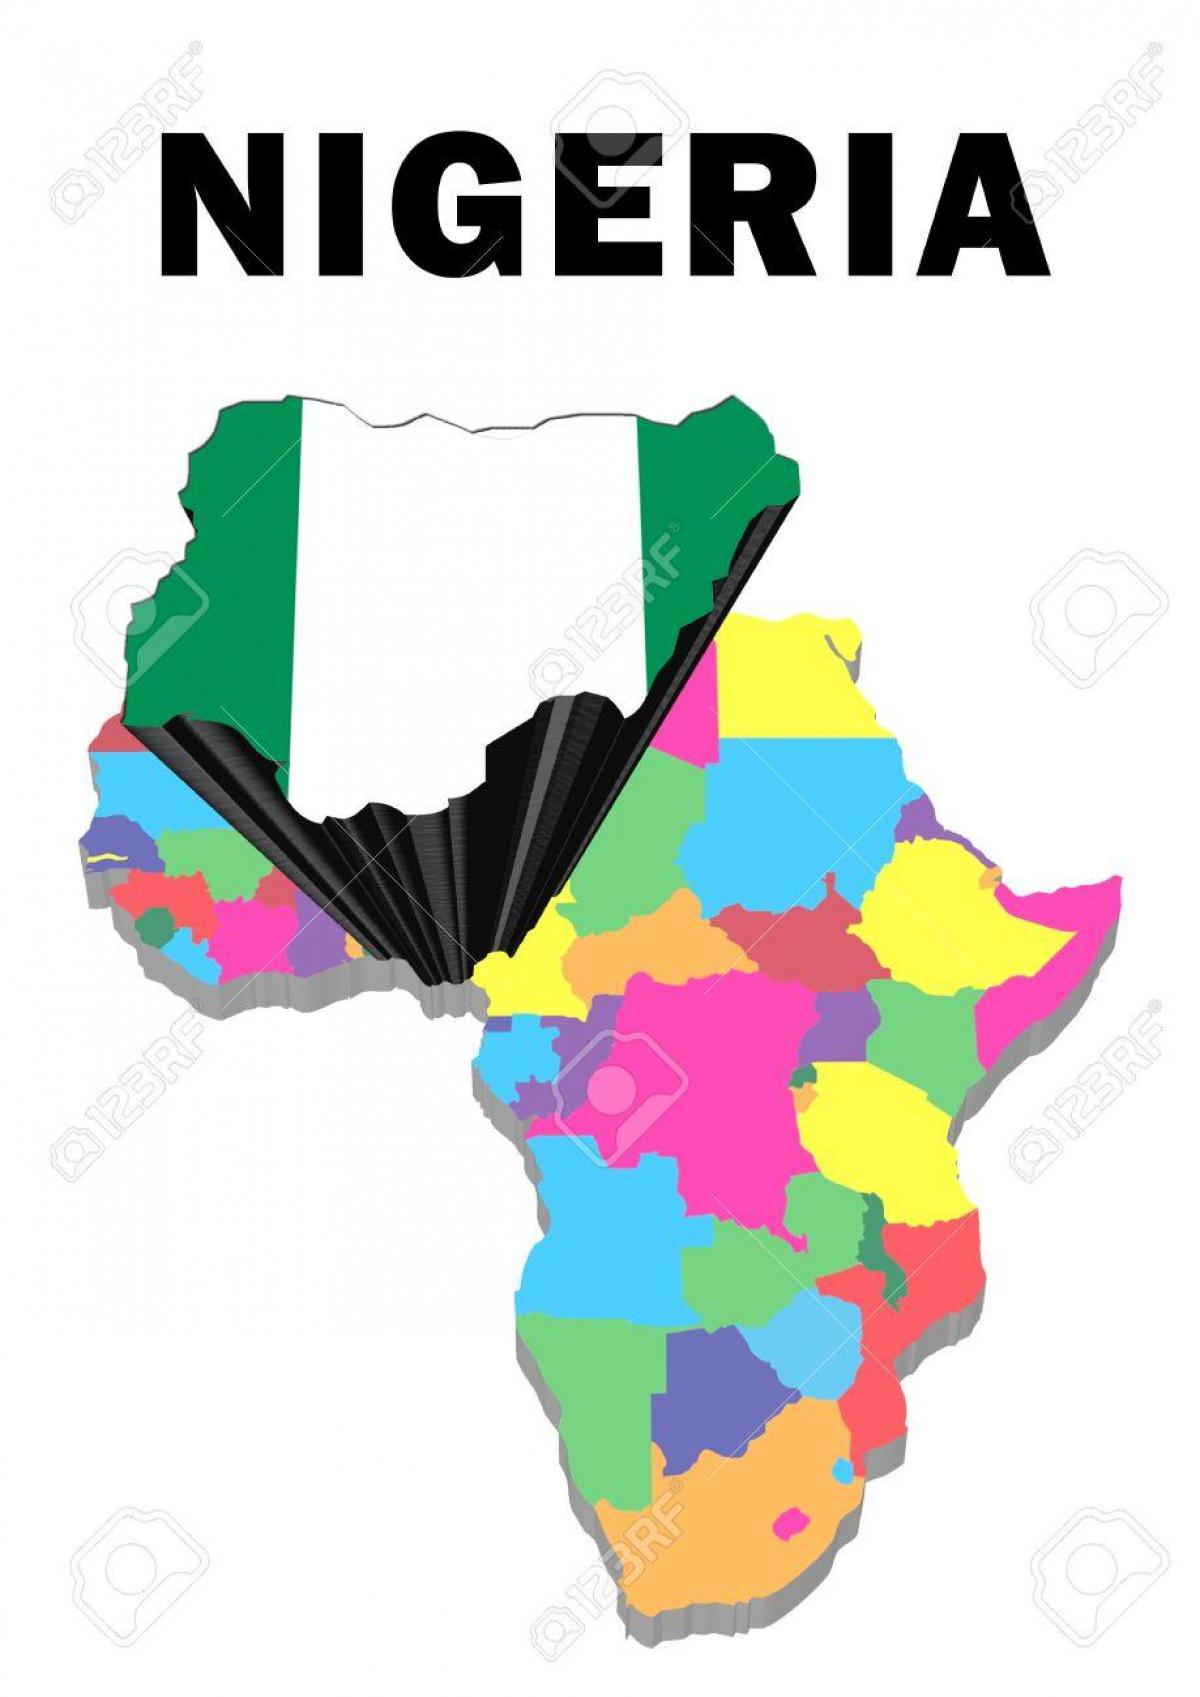 מפה של אפריקה עם ניגריה מודגש